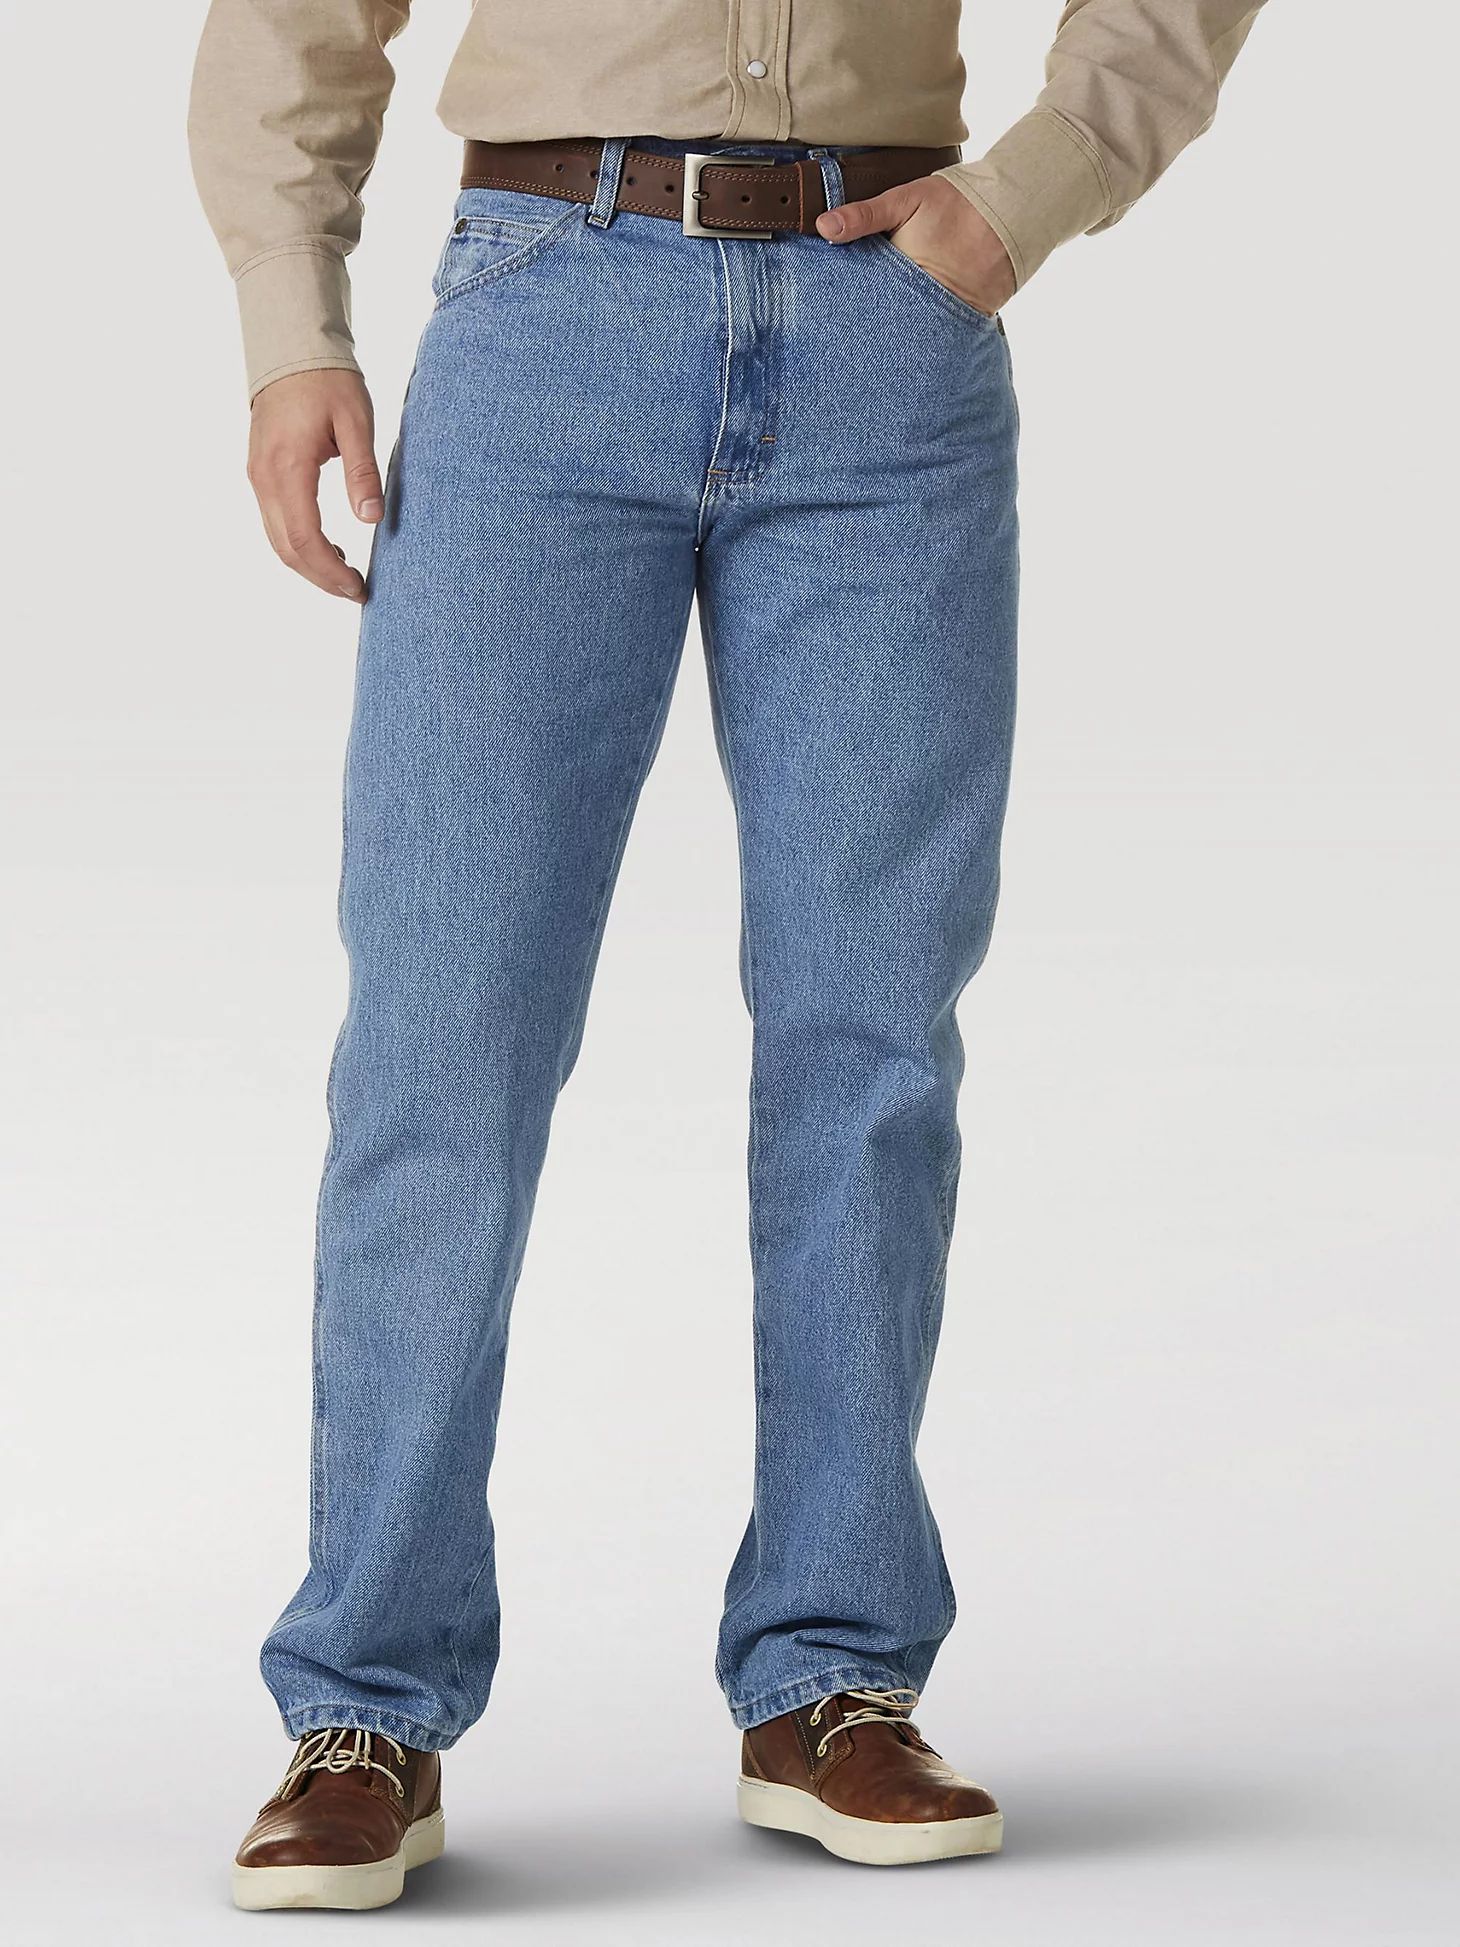 Wrangler Rugged Wear® Classic Fit Jean | Men's JEANS | Wrangler® | Wrangler